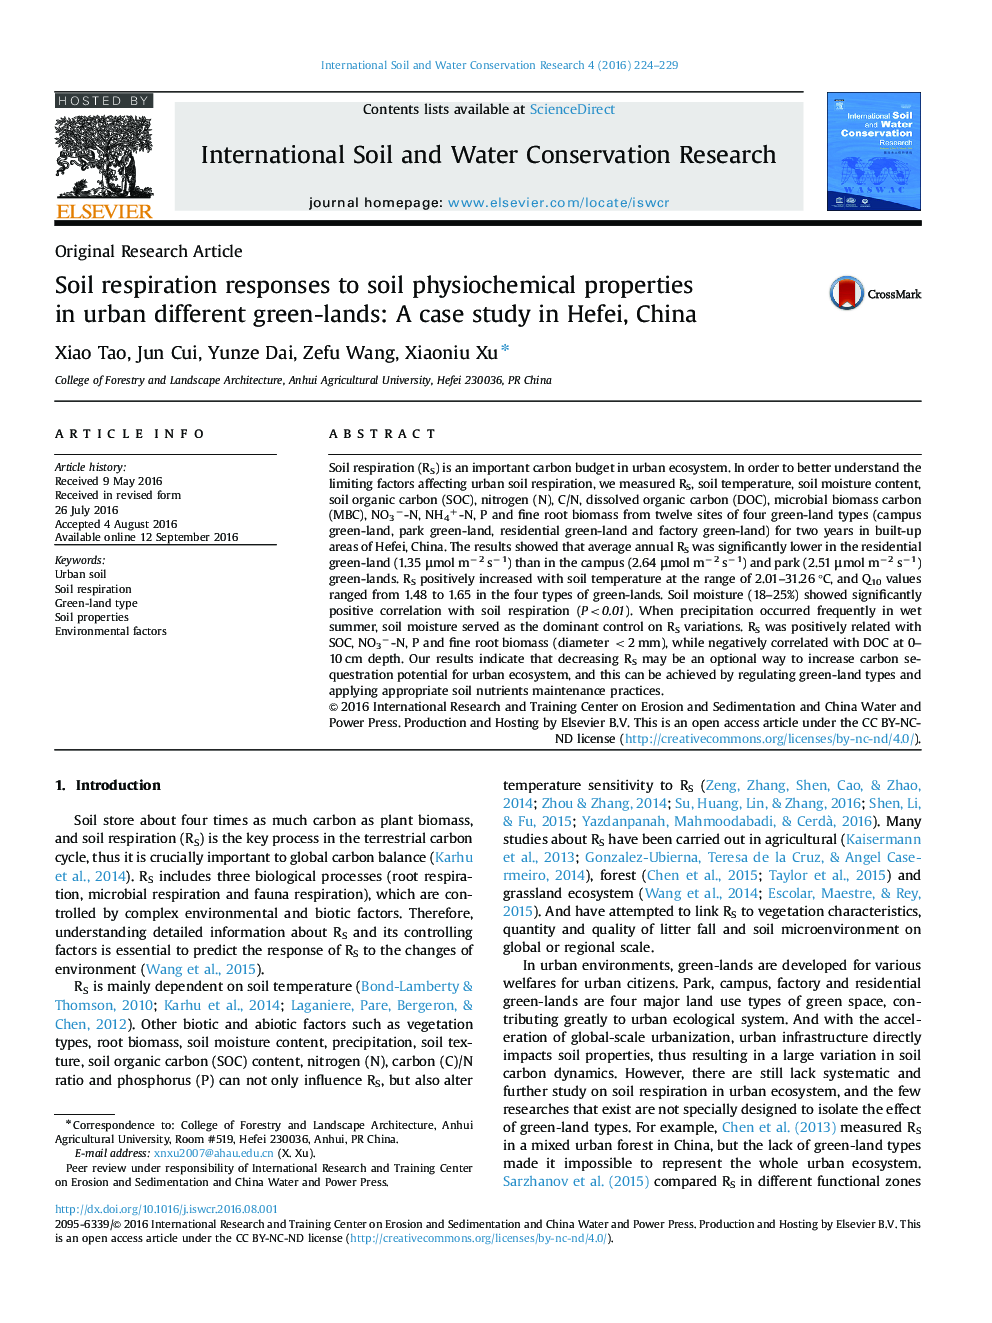 پاسخ تنفس خاک به خواص فیزیک و شیمیایی خاک در مناطق شهری مختلف سبز زمین: مطالعه موردی در Hefei، چین